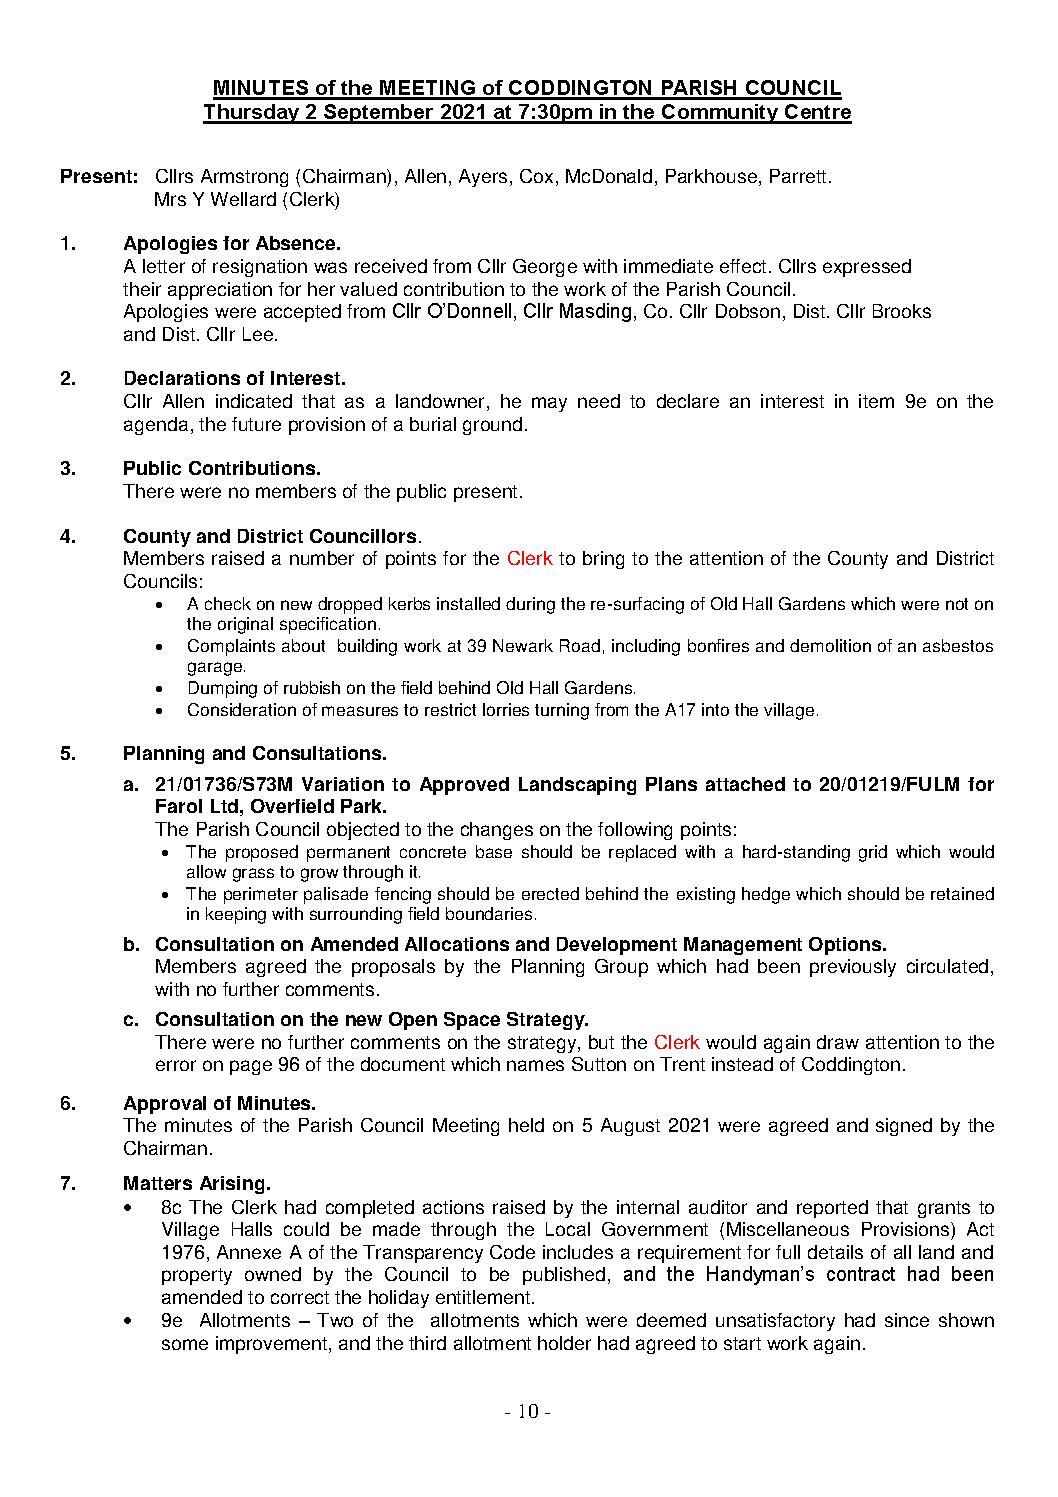 Parish Council Meeting 2 September 2021 Minutes